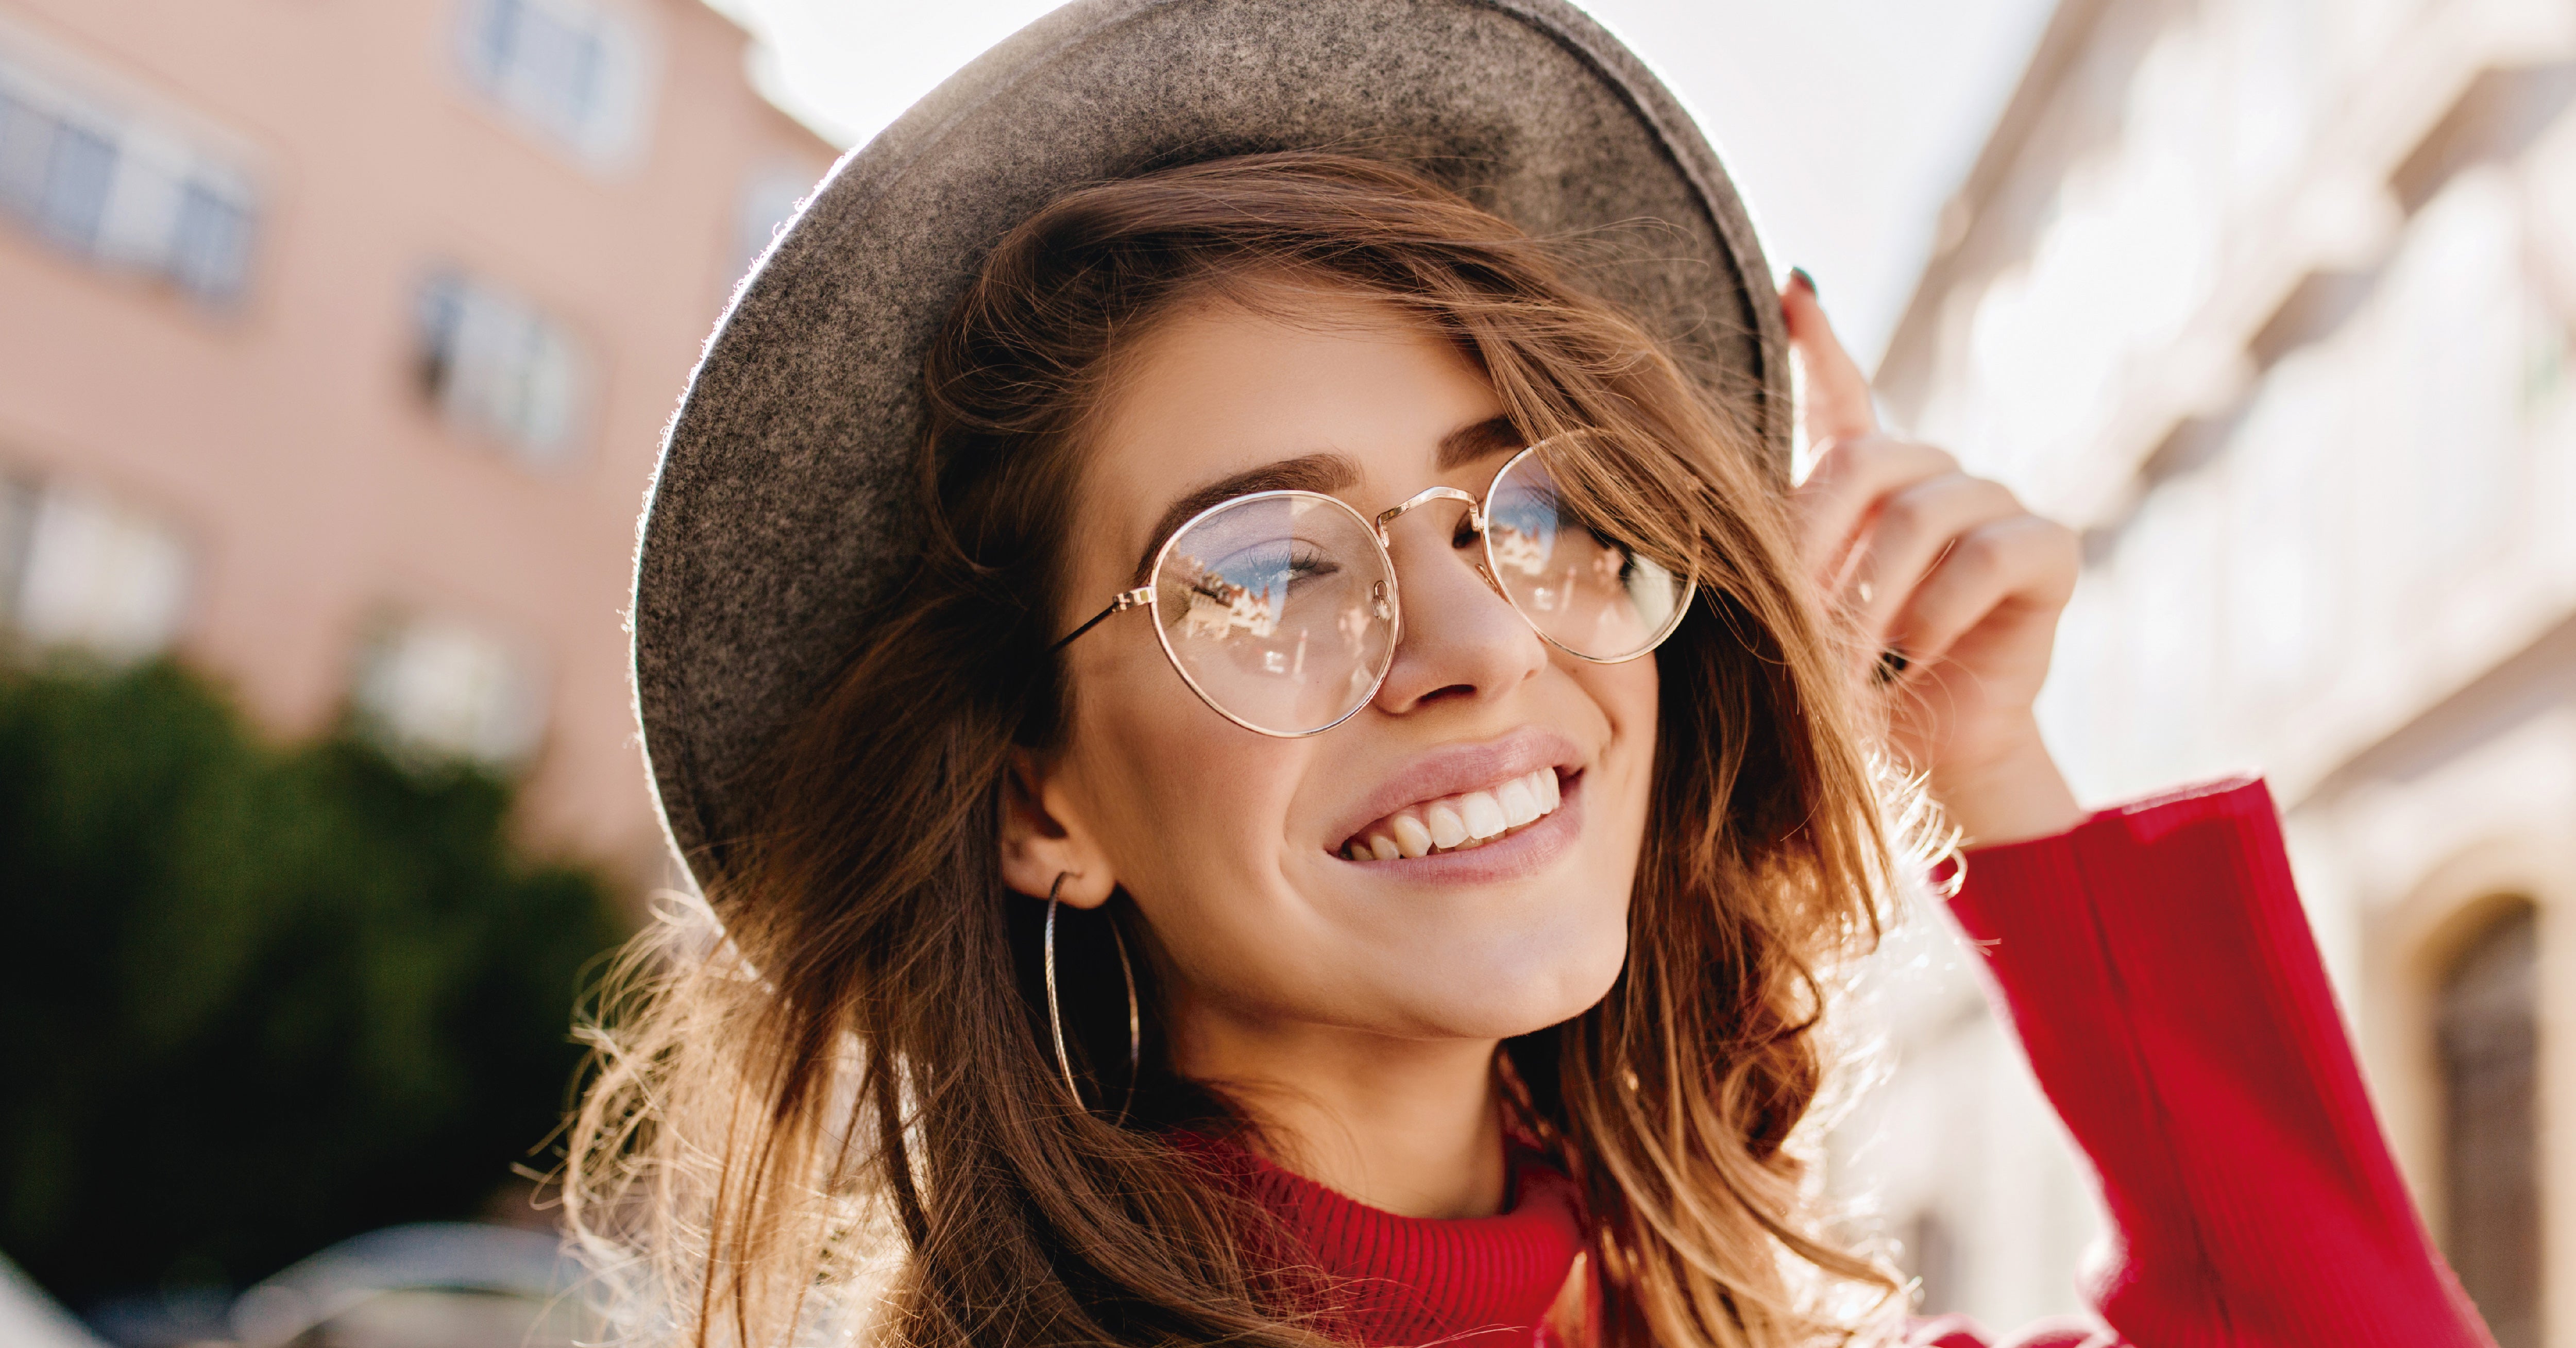 Cuáles son las gafas que mejor van con tu estilo?— Ópticas Lafam